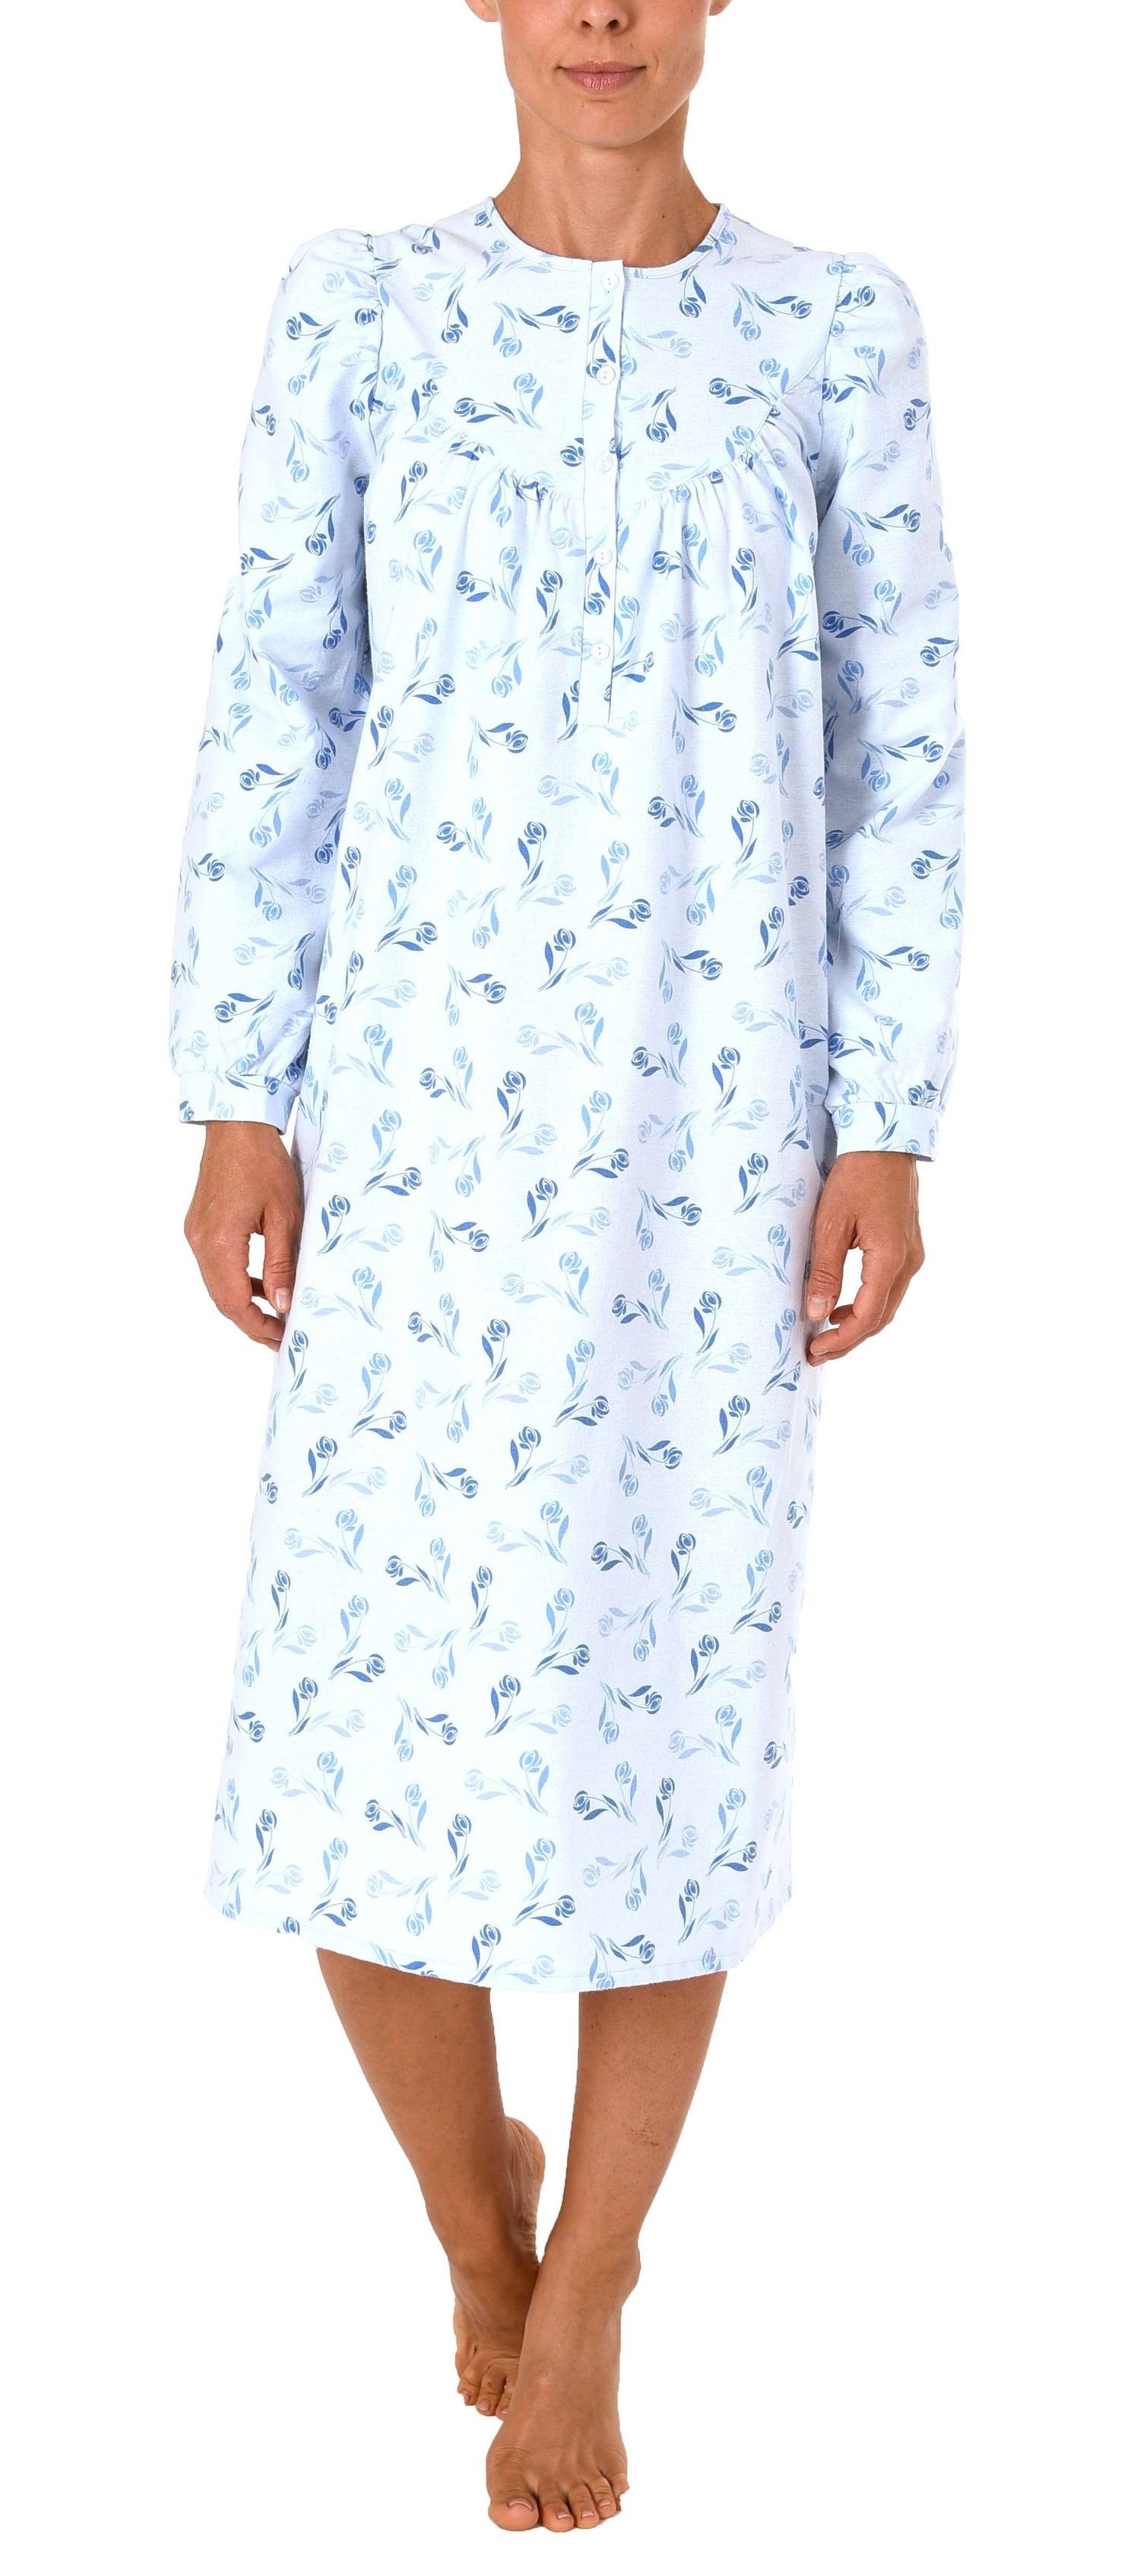 Normann Nachthemd Damen Finette Nachthemd fraulich mit Knopfleiste am Hals  – auch in Übergrössen – 61885